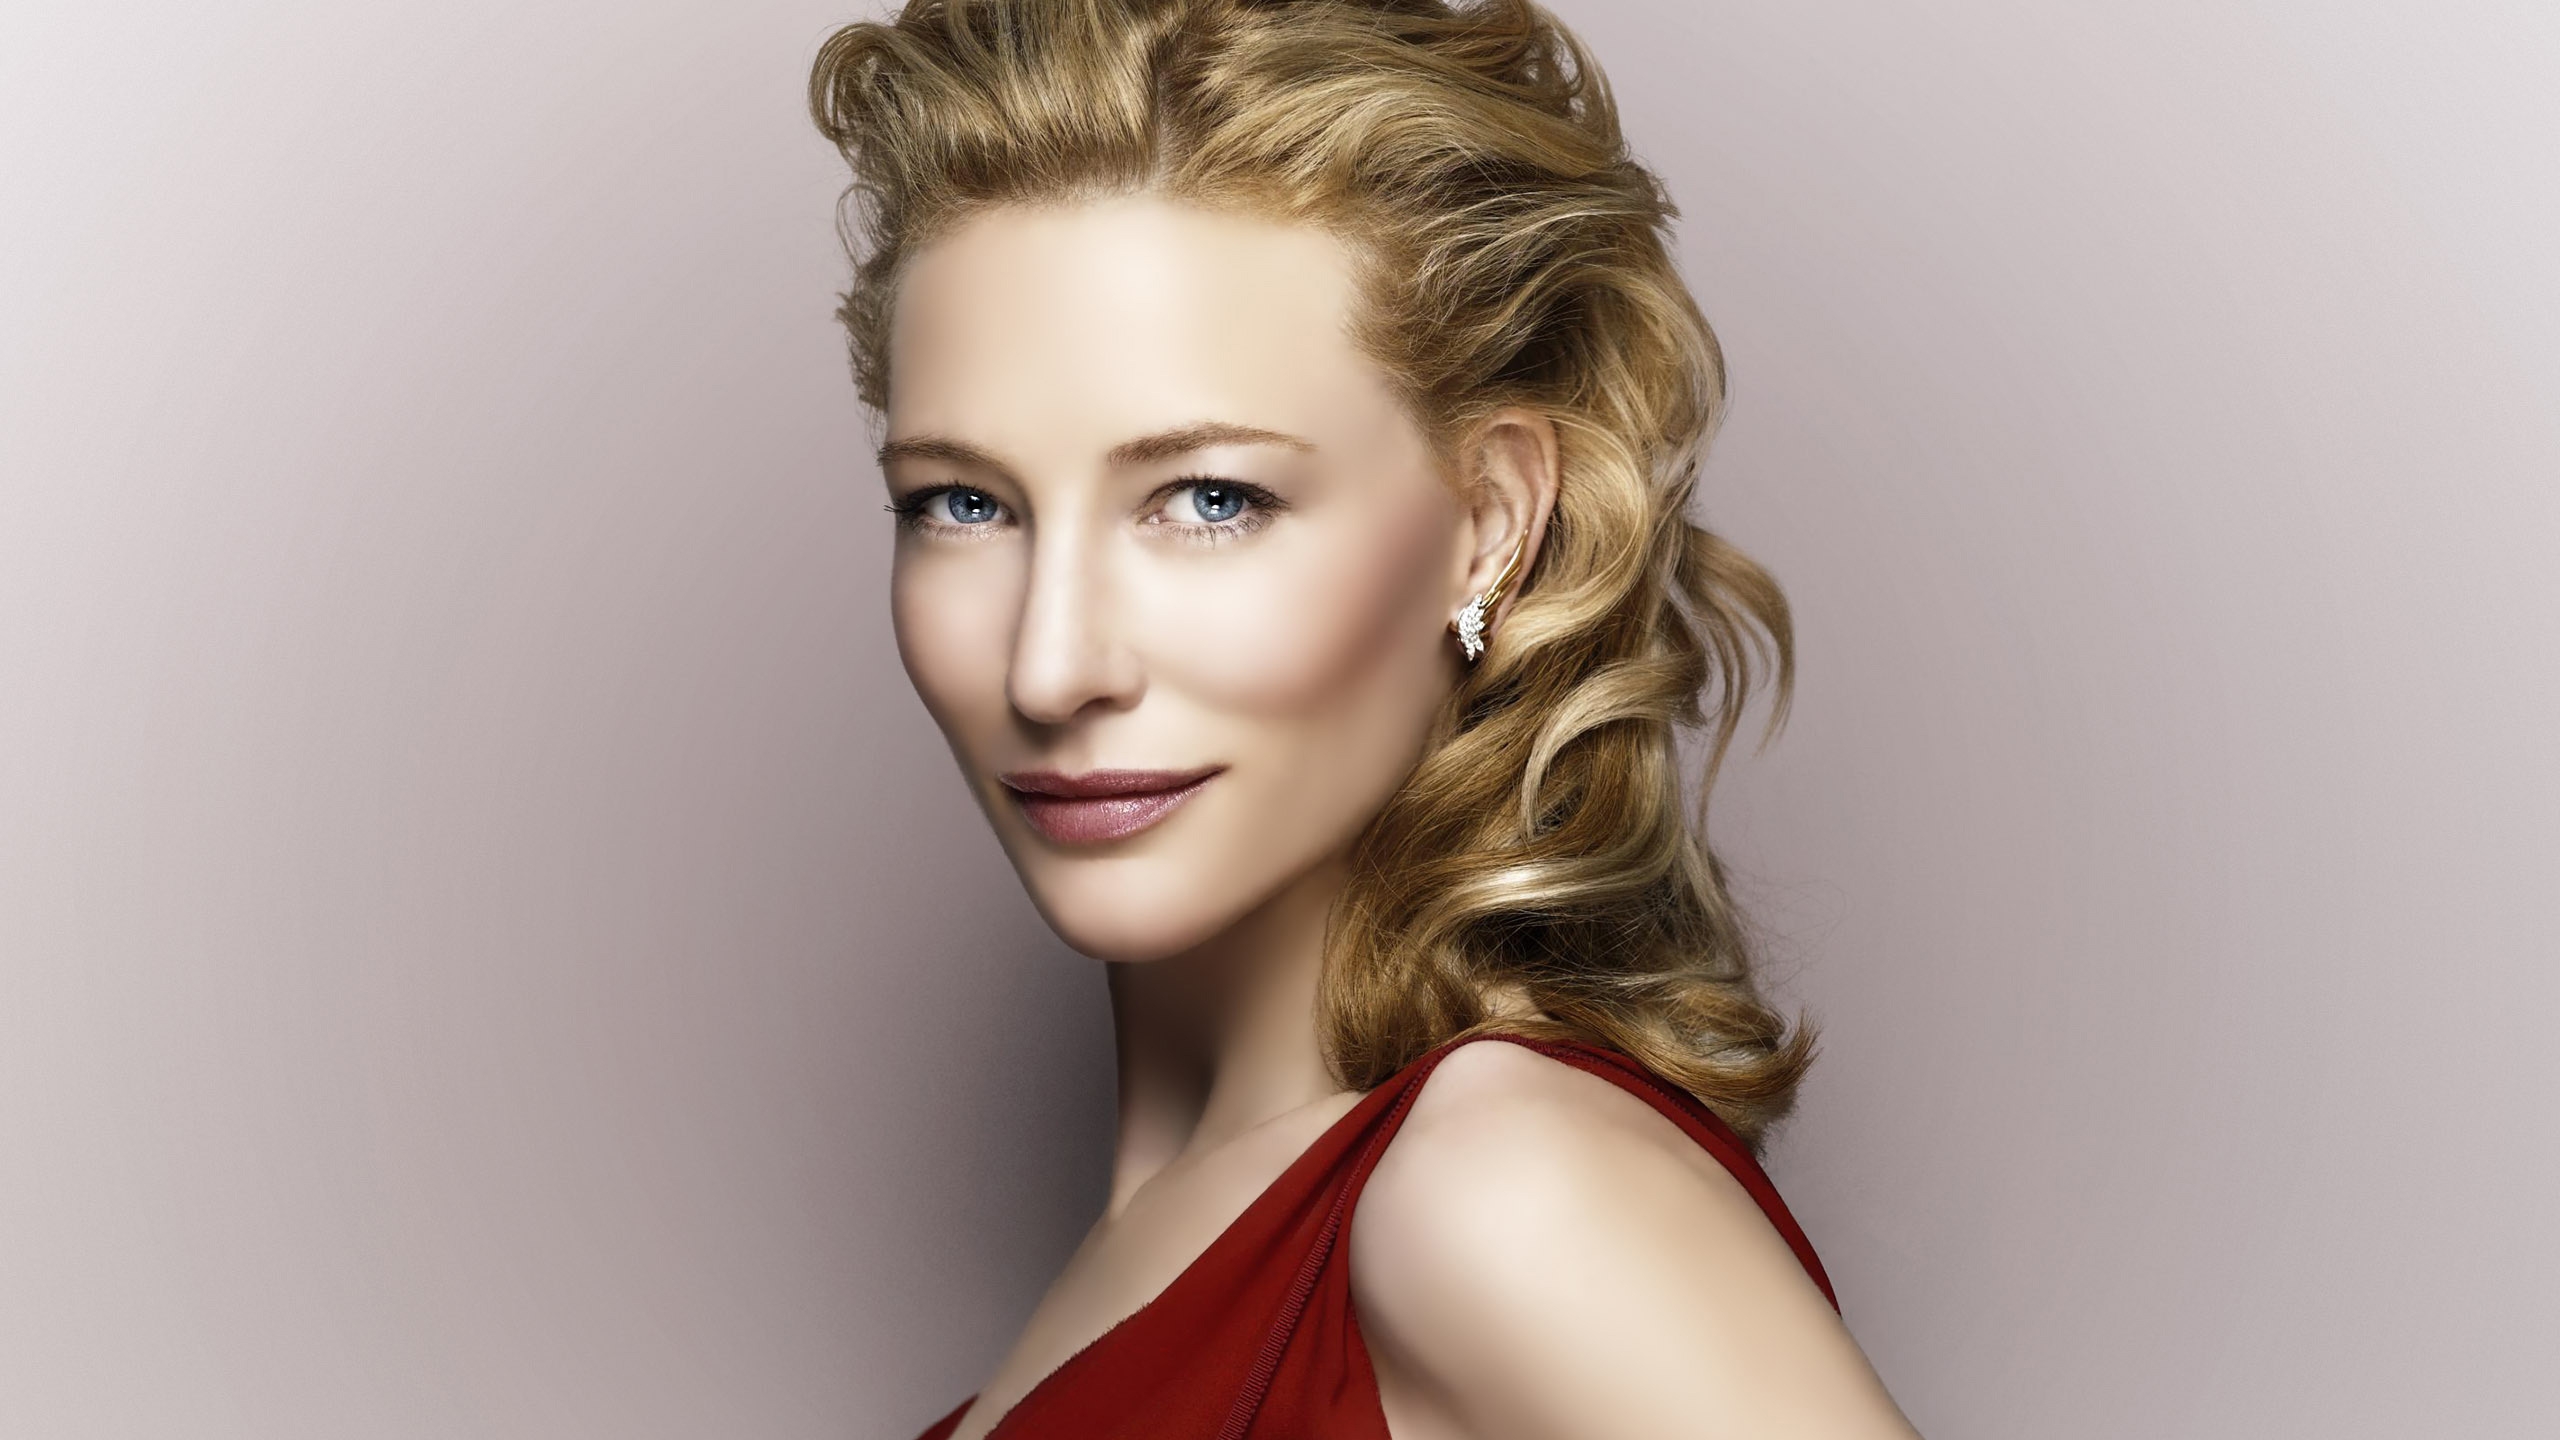 Cate Blanchett for 2560x1440 HDTV resolution